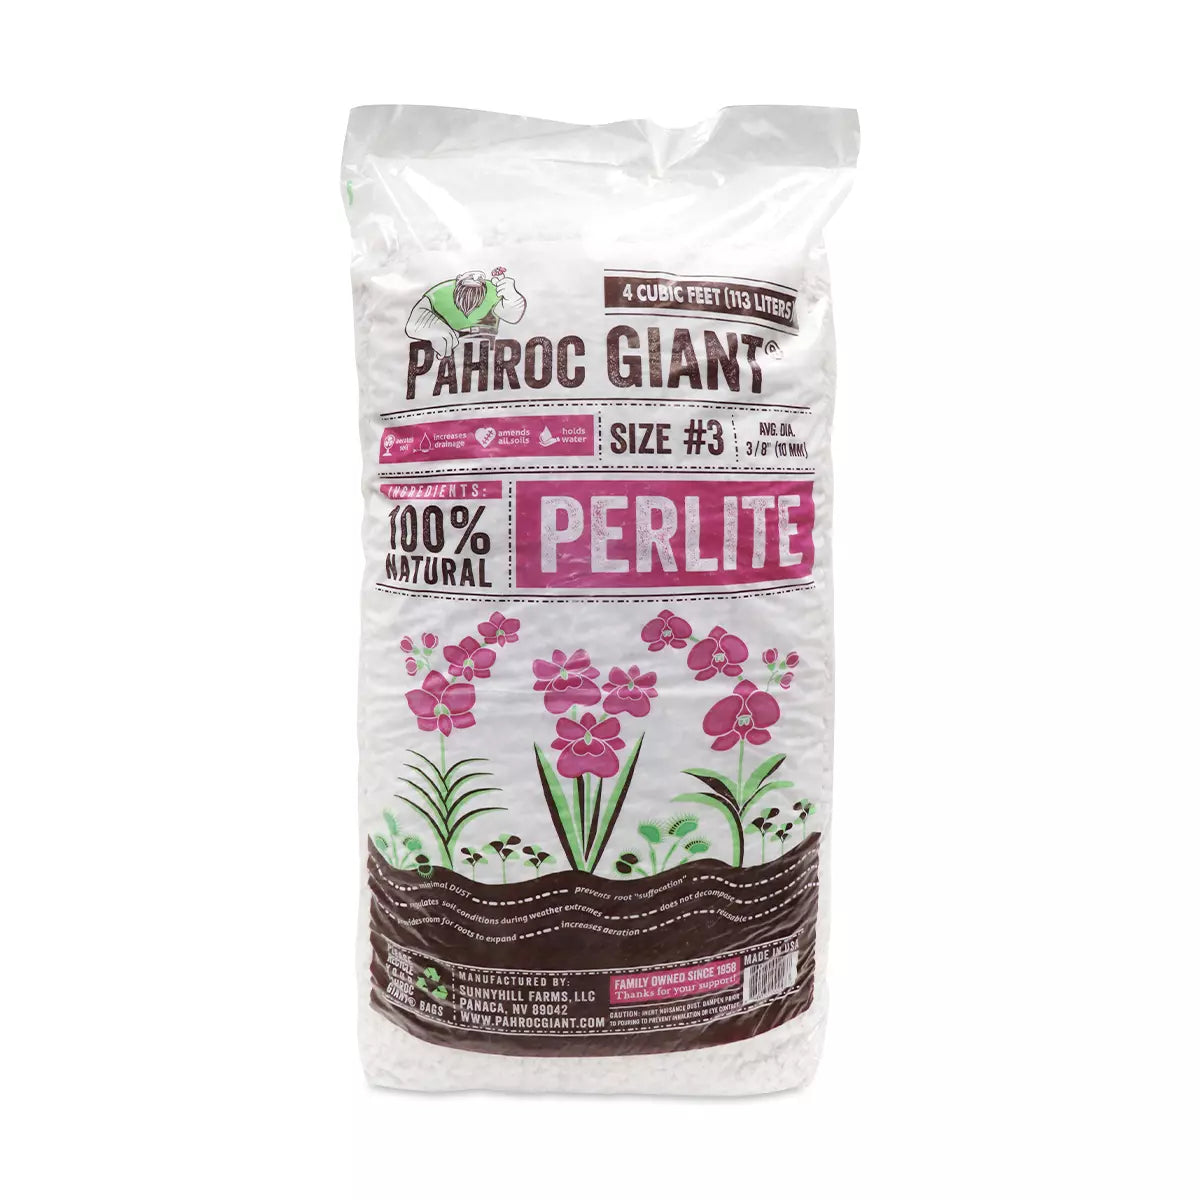 Pahroc Giant Perlite #3, 4 cu ft.